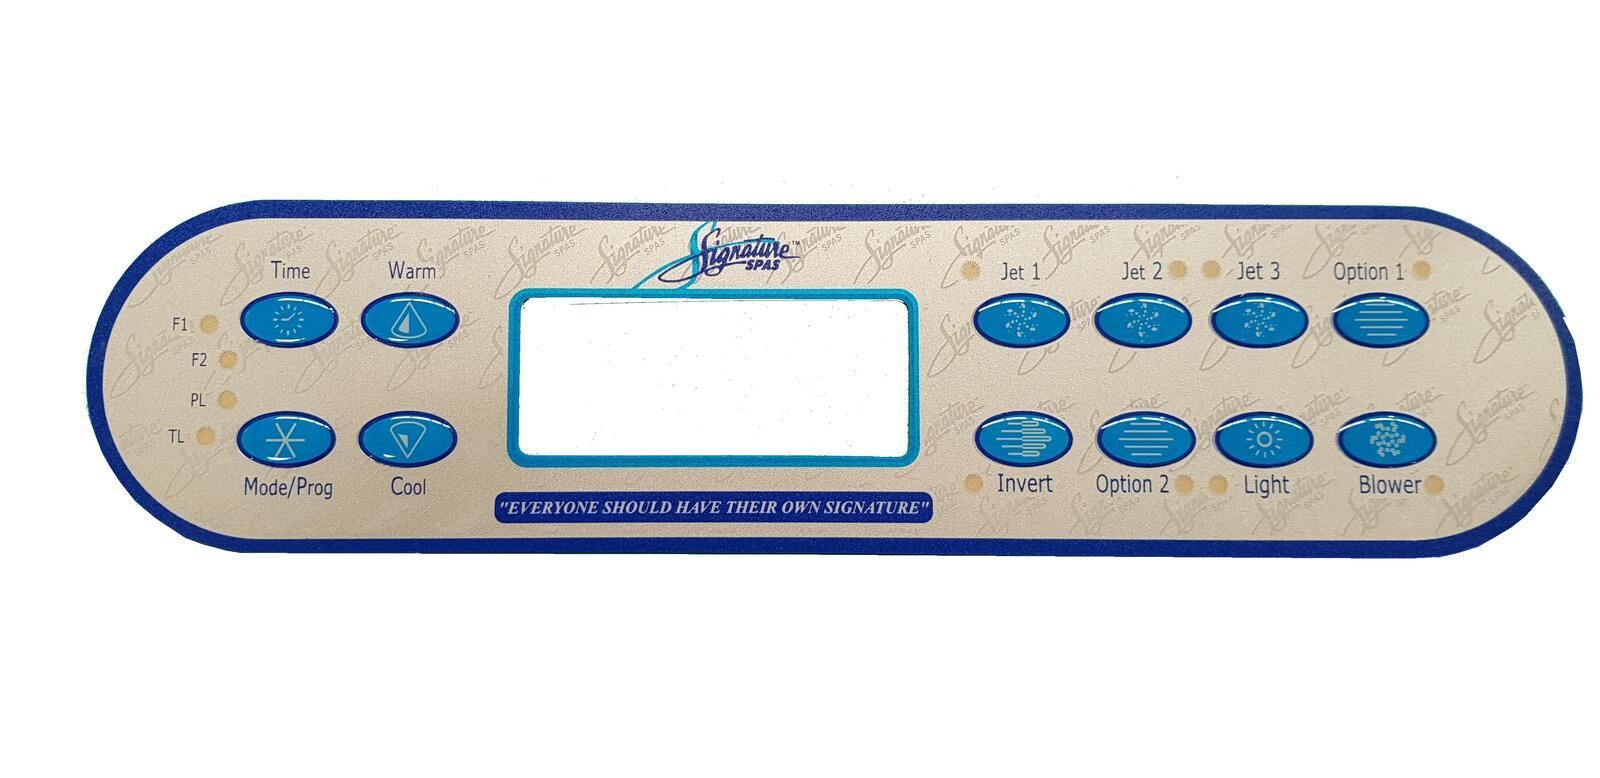 Balboa (Signature Spas) ML900 Overlay - Premium Spa Control Panel